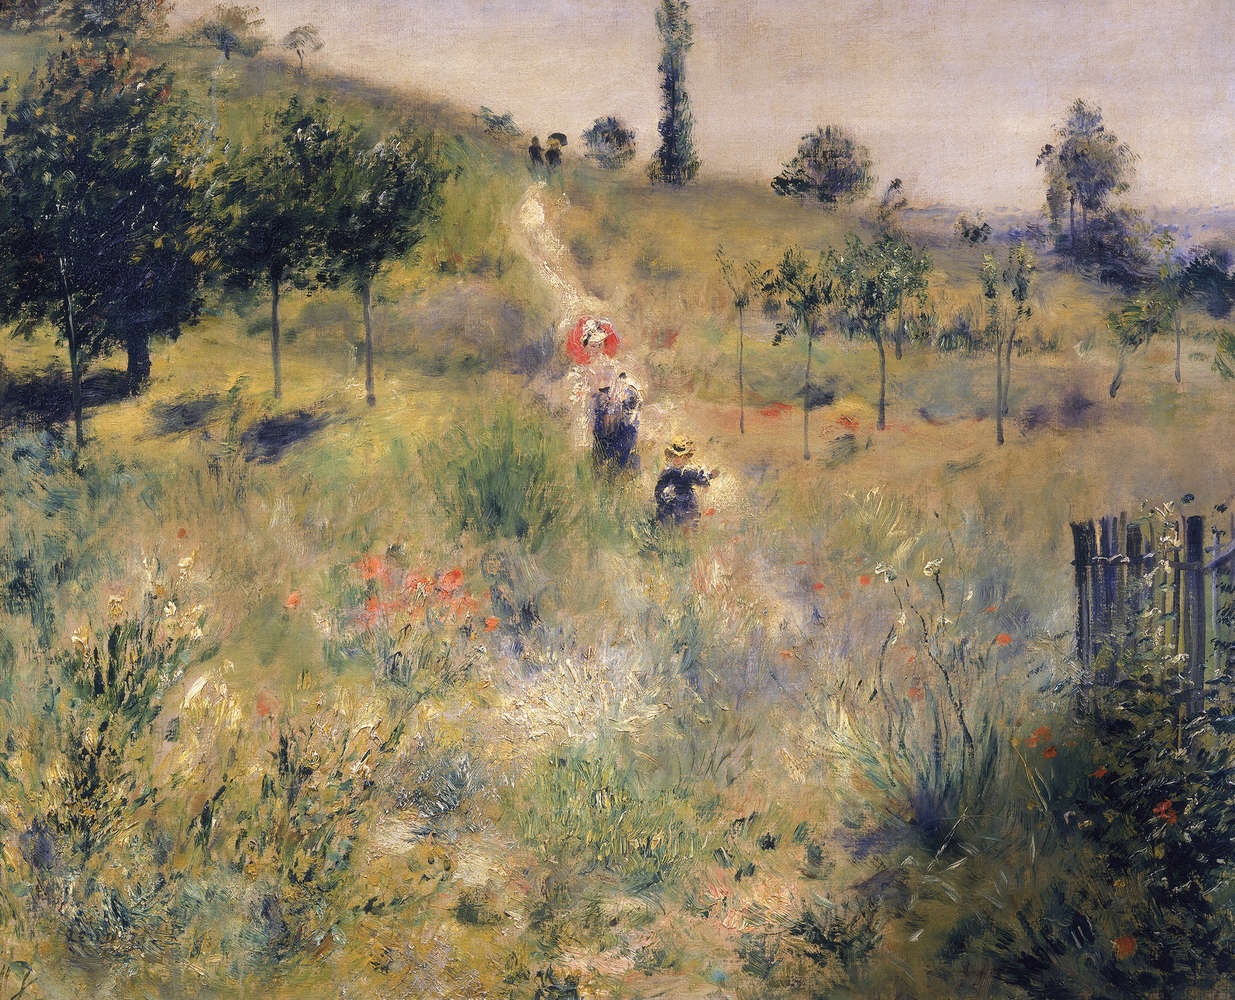             Fototapete "Ansteigender Weg durch hohes Gras" von Pierre Auguste Renoir
        